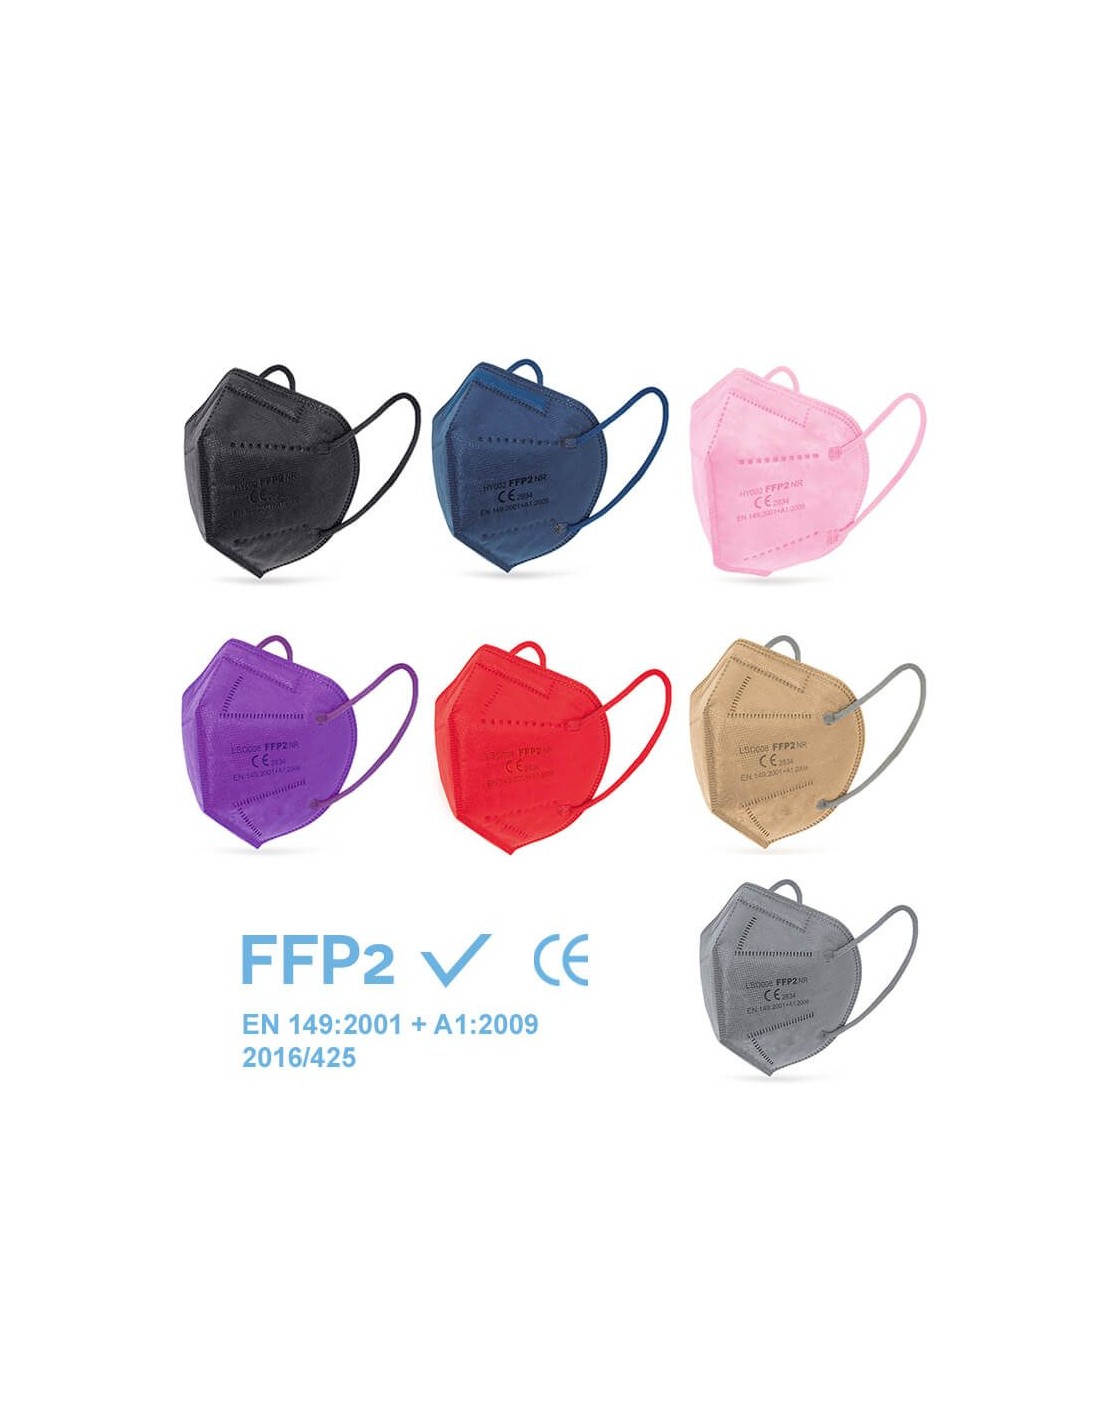 Mascarillas FFP2 personalizadas para Empresas y Eventos (EPI)